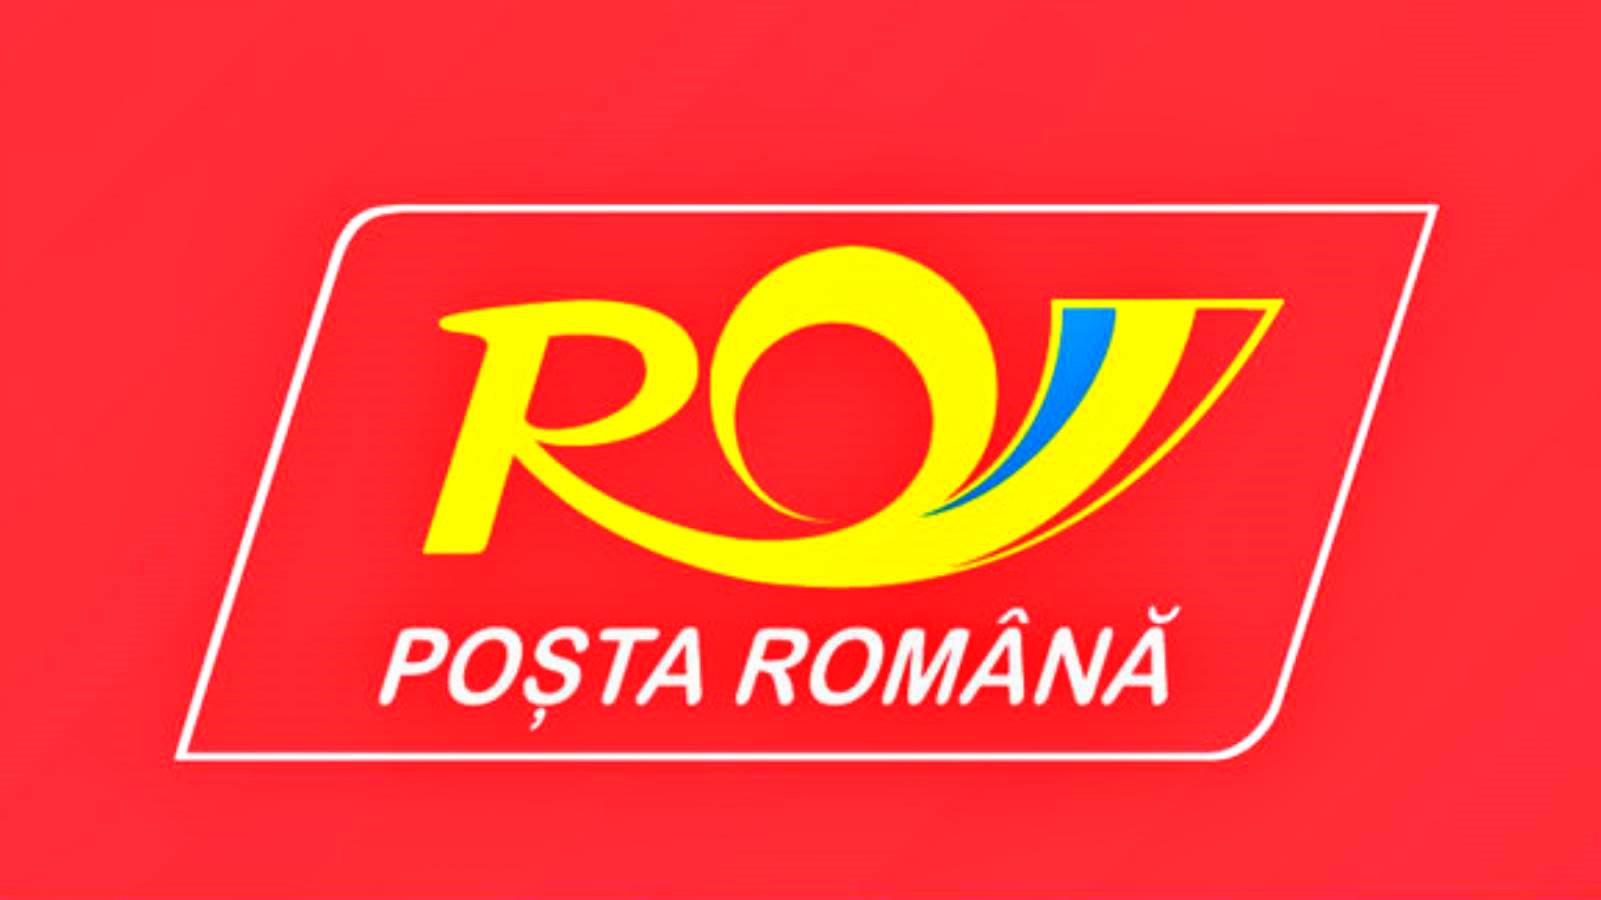 Lista oficial de correos rumanos de artículos cuyo envío está prohibido